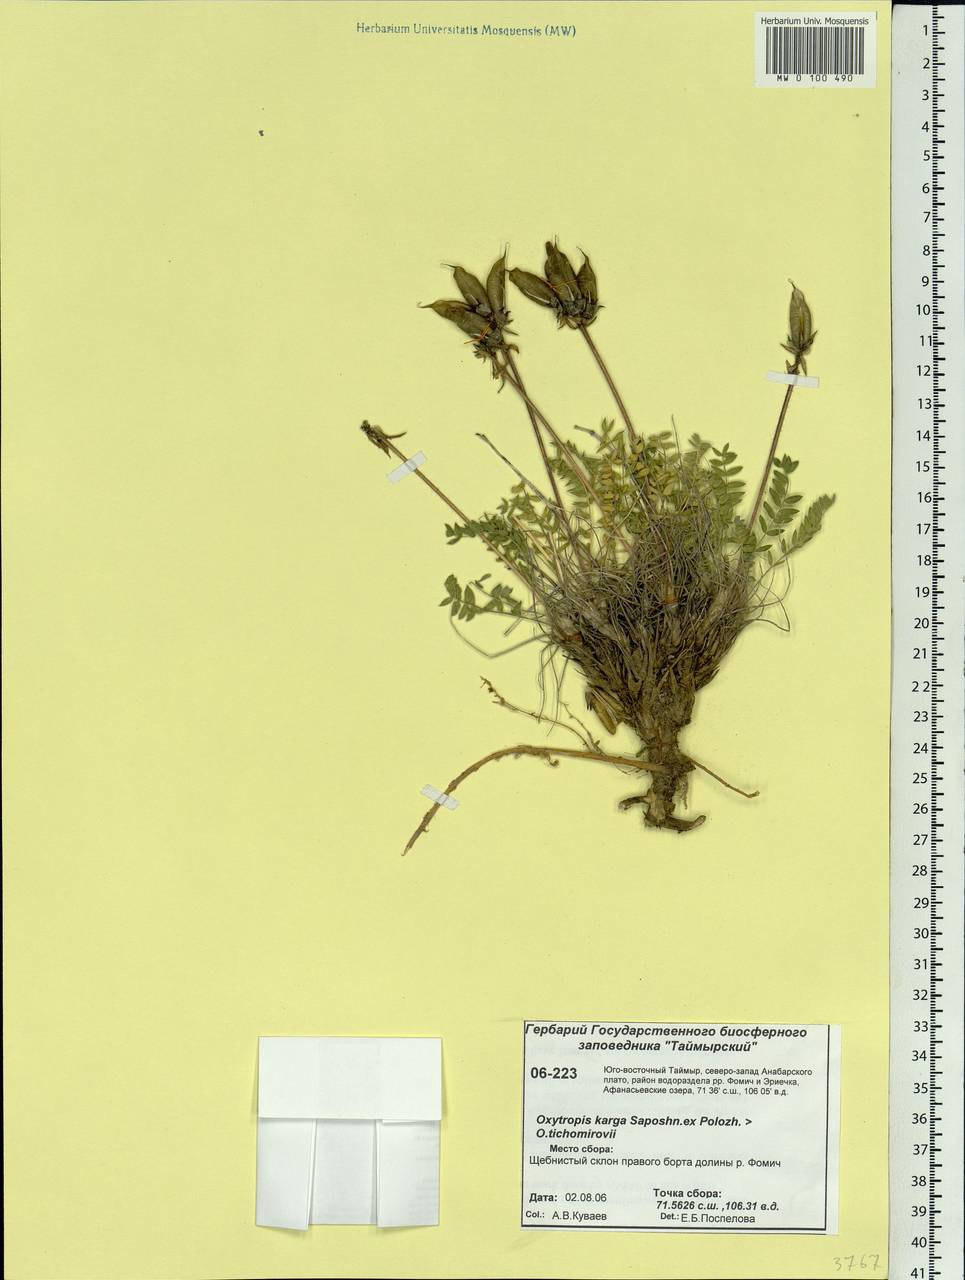 Oxytropis arctica subsp. taimyrensis Jurtzev, Сибирь, Центральная Сибирь (S3) (Россия)